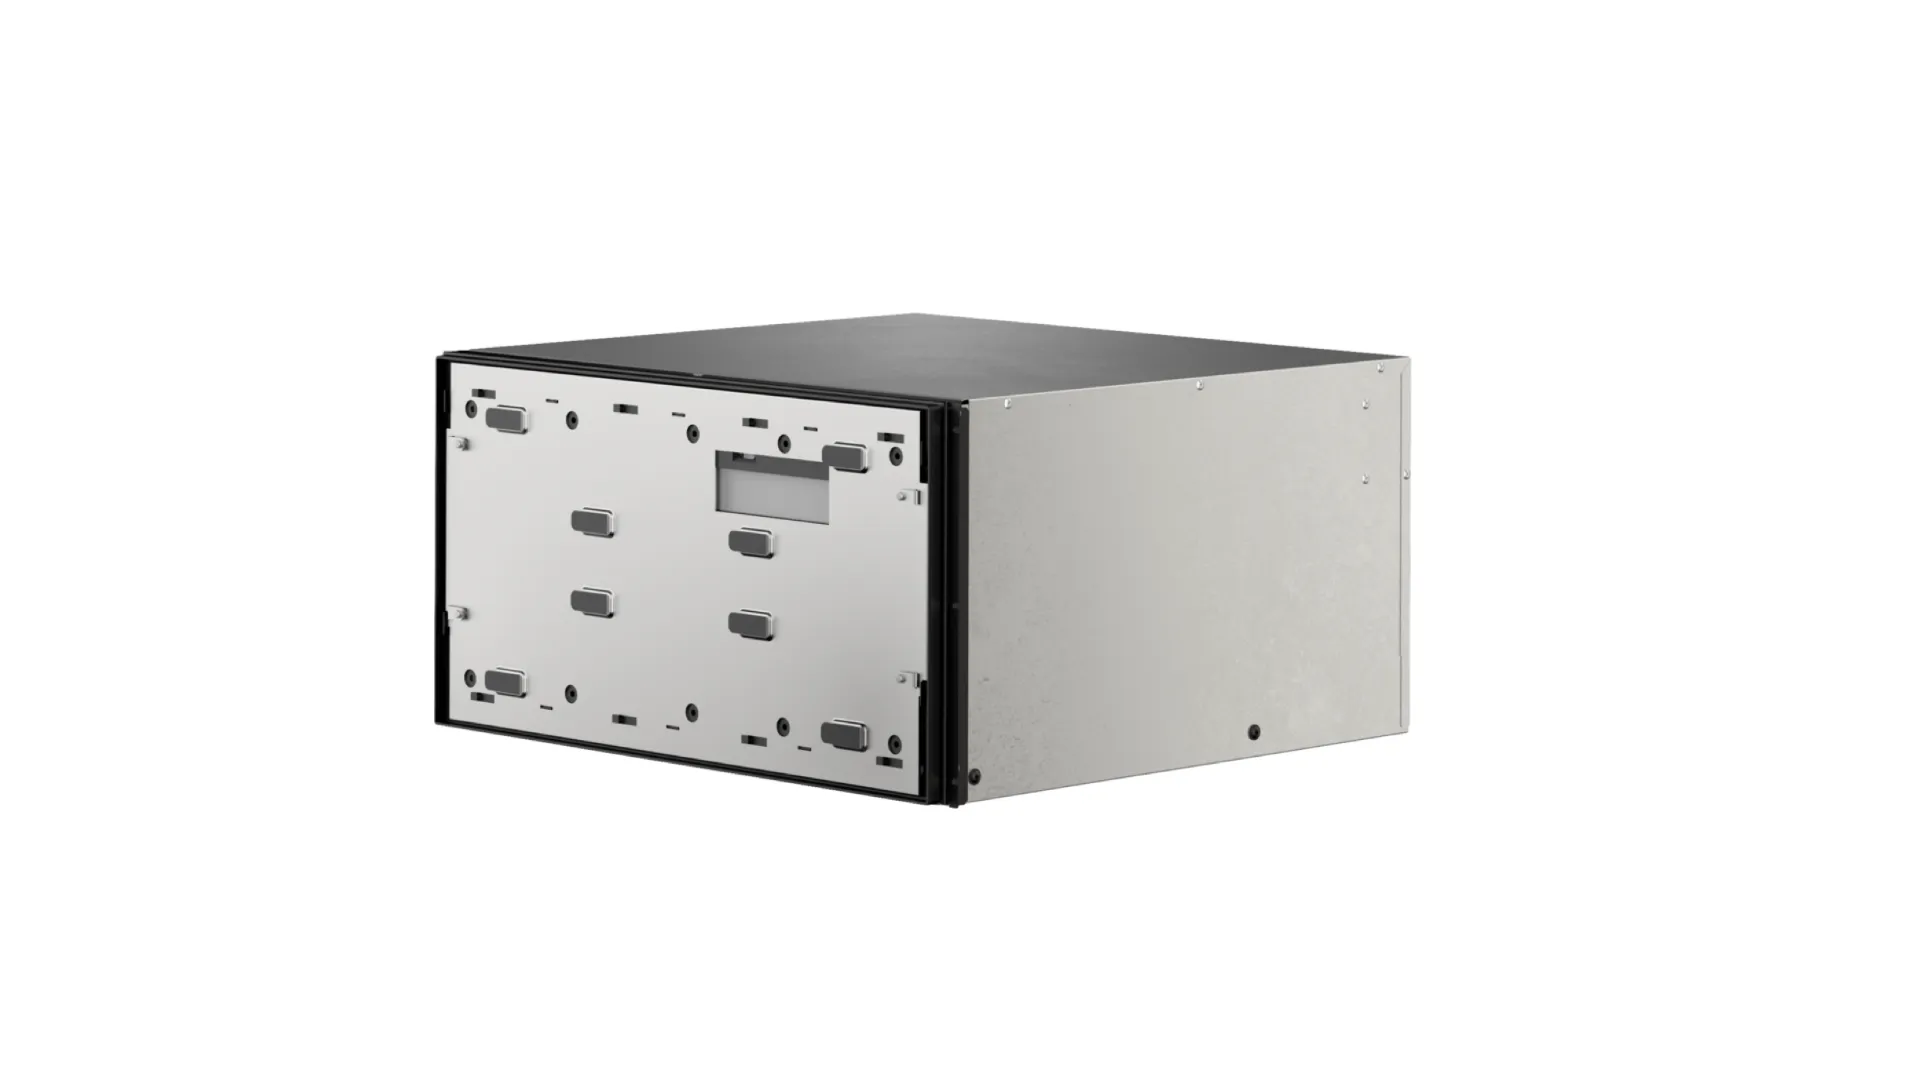 MS290 heating drawer